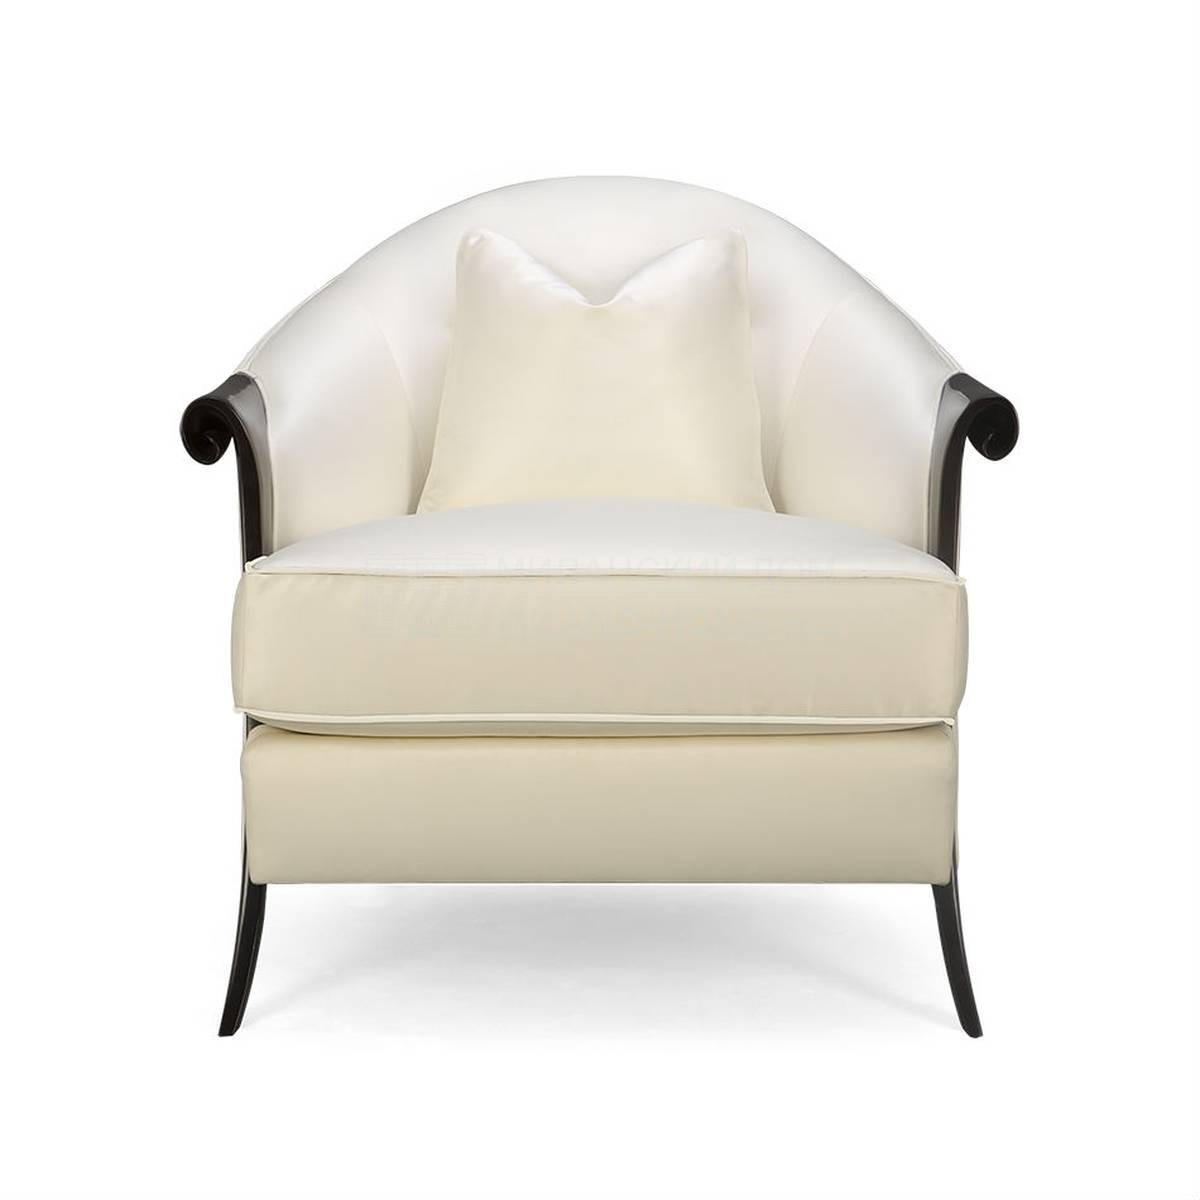 Кожаное кресло Picadilly armchair из США фабрики CHRISTOPHER GUY